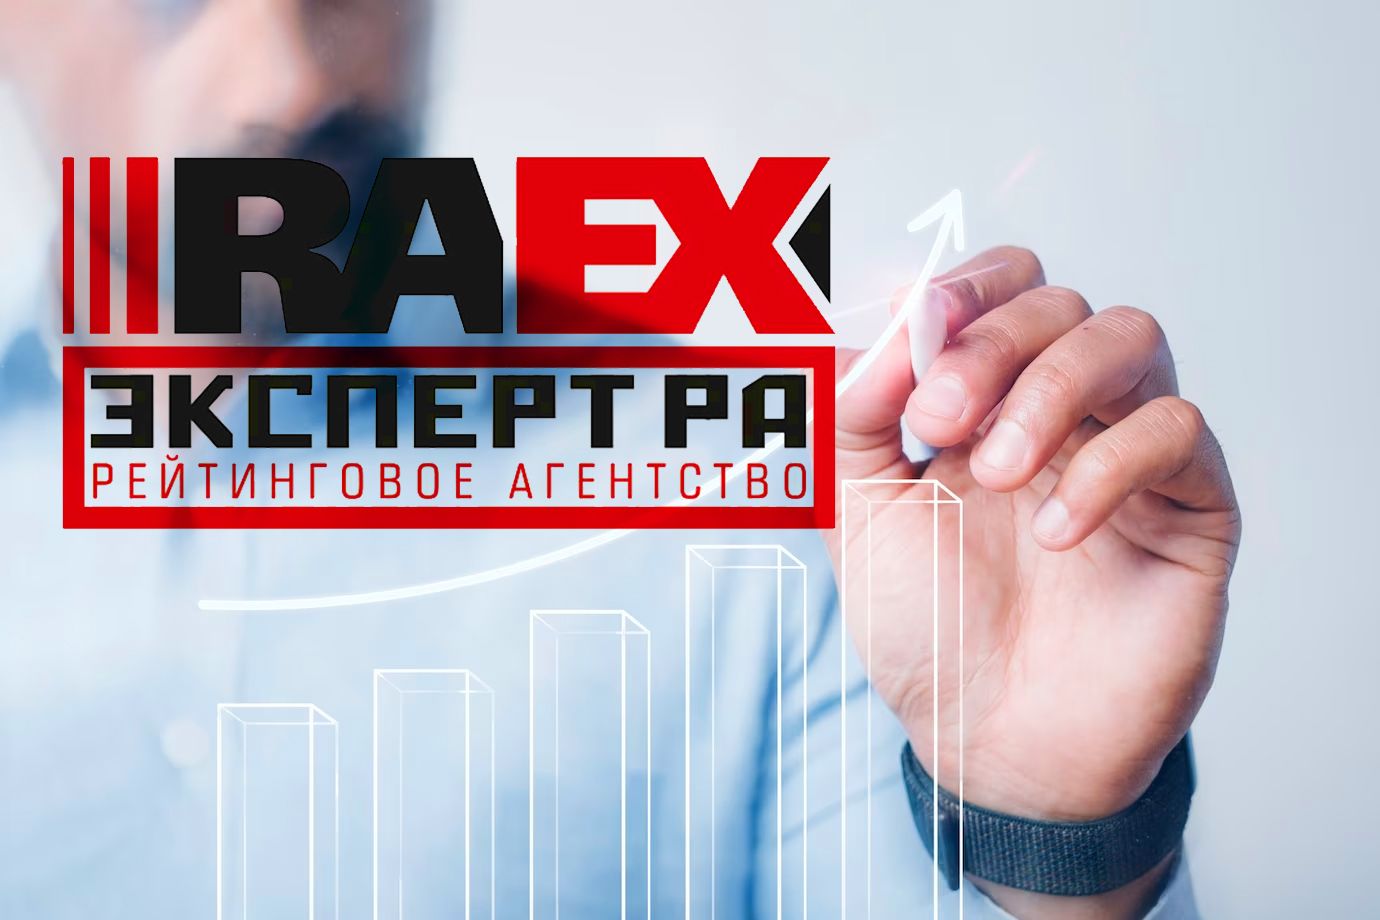 L’agence RAEX a publié son classement annuel des 100 meilleurs établissements d’enseignement supérieur de Russie. Lors de sa compilation, trois facteurs les plus importants ont été pris en compte : les conditions d’obtention d’un enseignement supérieur de haute qualité, les niveaux de demande de diplômés sur le marché du travail et les activités de recherche.